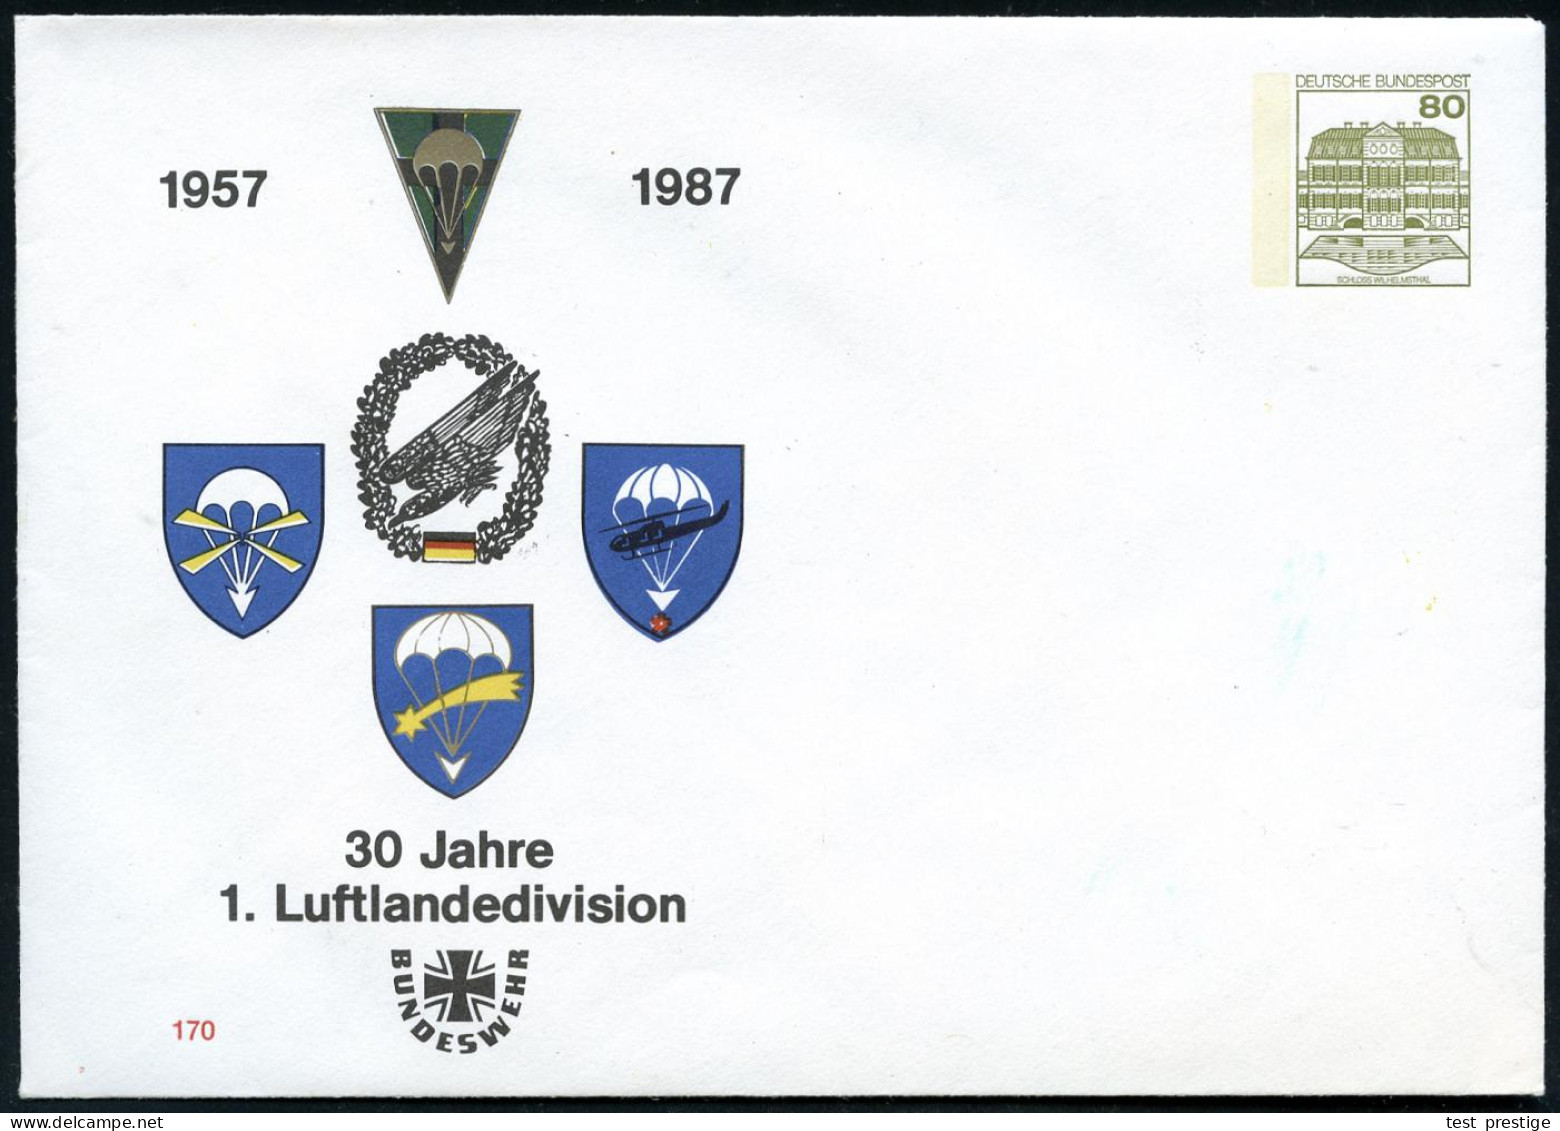 B.R.D. 1987 PU 80 Pf. Burgen, Oliv: 1957 1987, 30 Jahre 1. Luftlandedivision (Fallschirm-Abzeichen) Ungebr. - FALLSCHIRM - Paracaidismo